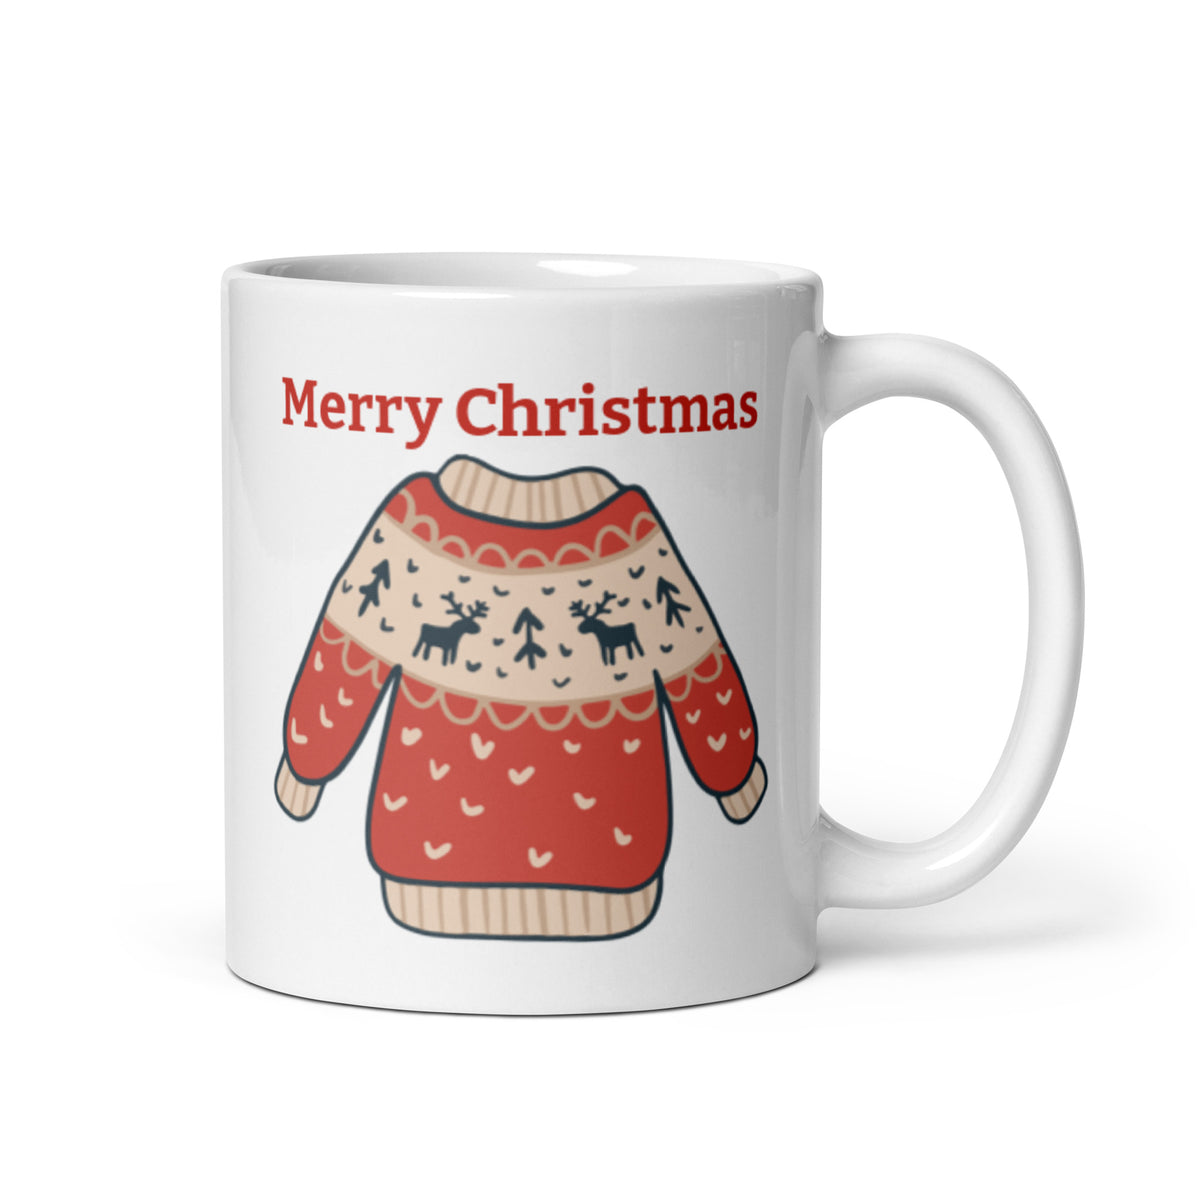 Mug, Too Cute for The Naughty List, Christmas Mugs, Funny Gift Cup Mug –  23sweets